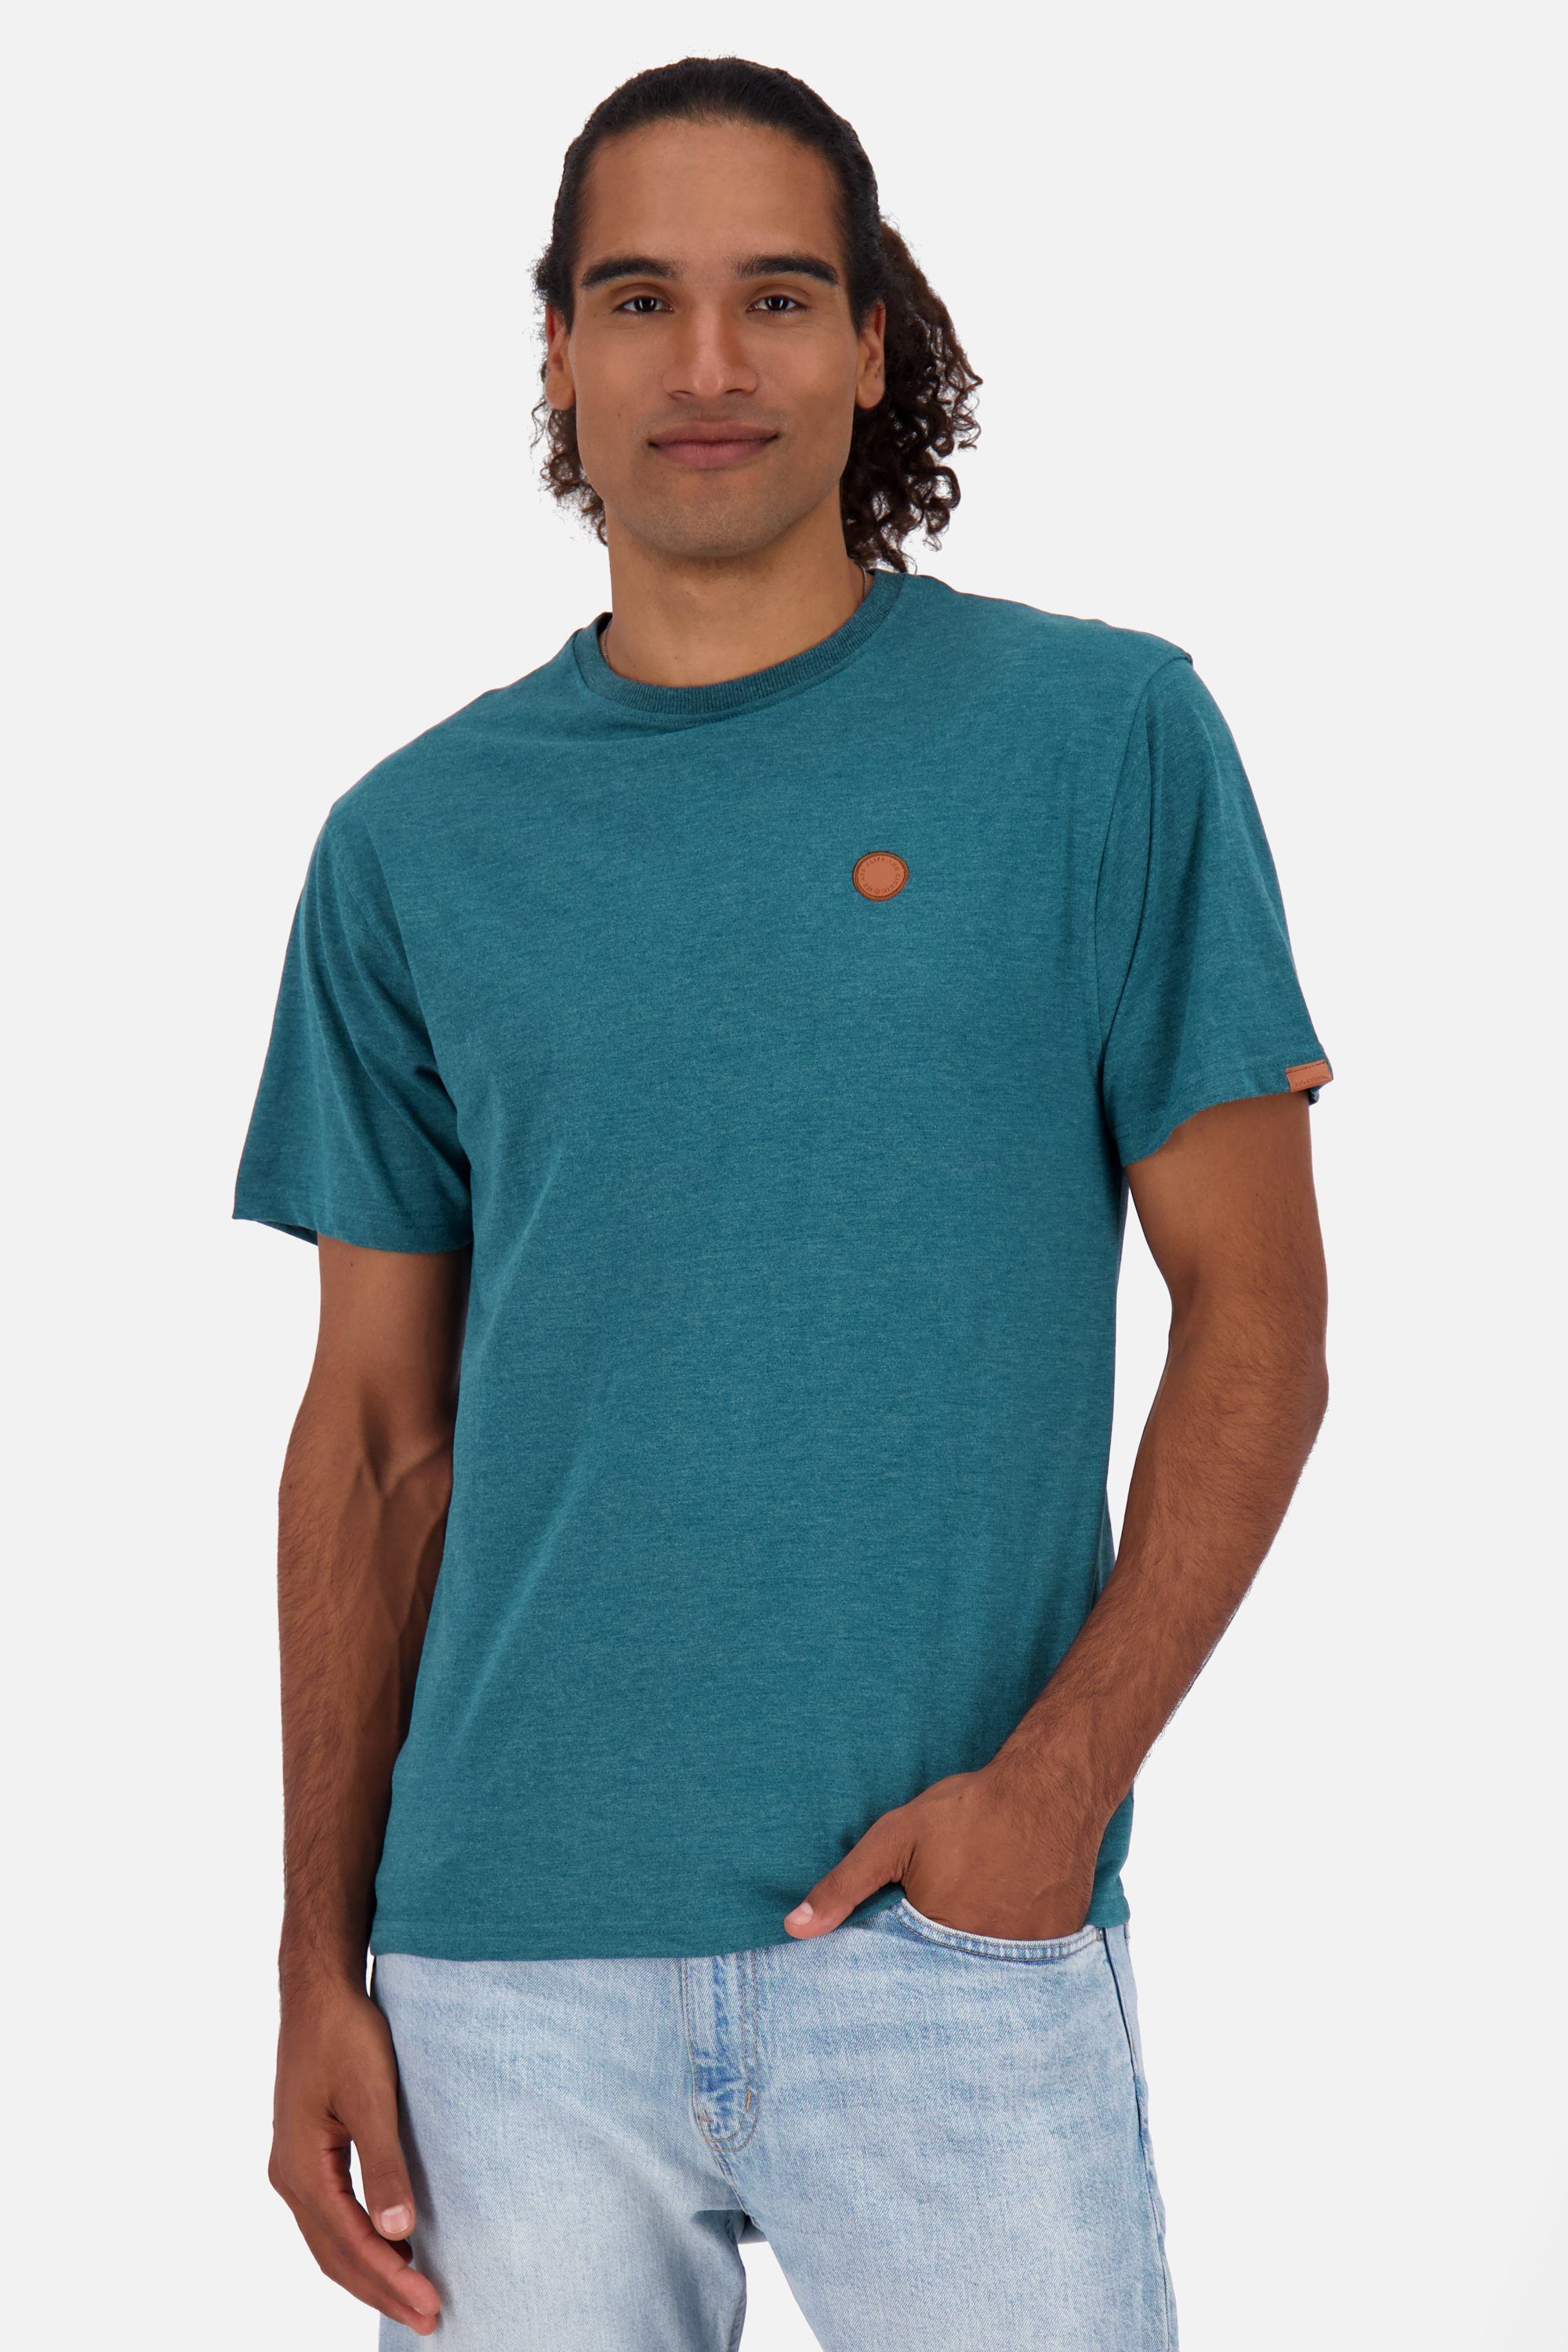 Alife & Shirt Shirt oceanic Kurzarmshirt, Rundhalsshirt Kickin Herren A MaddoxAK melange